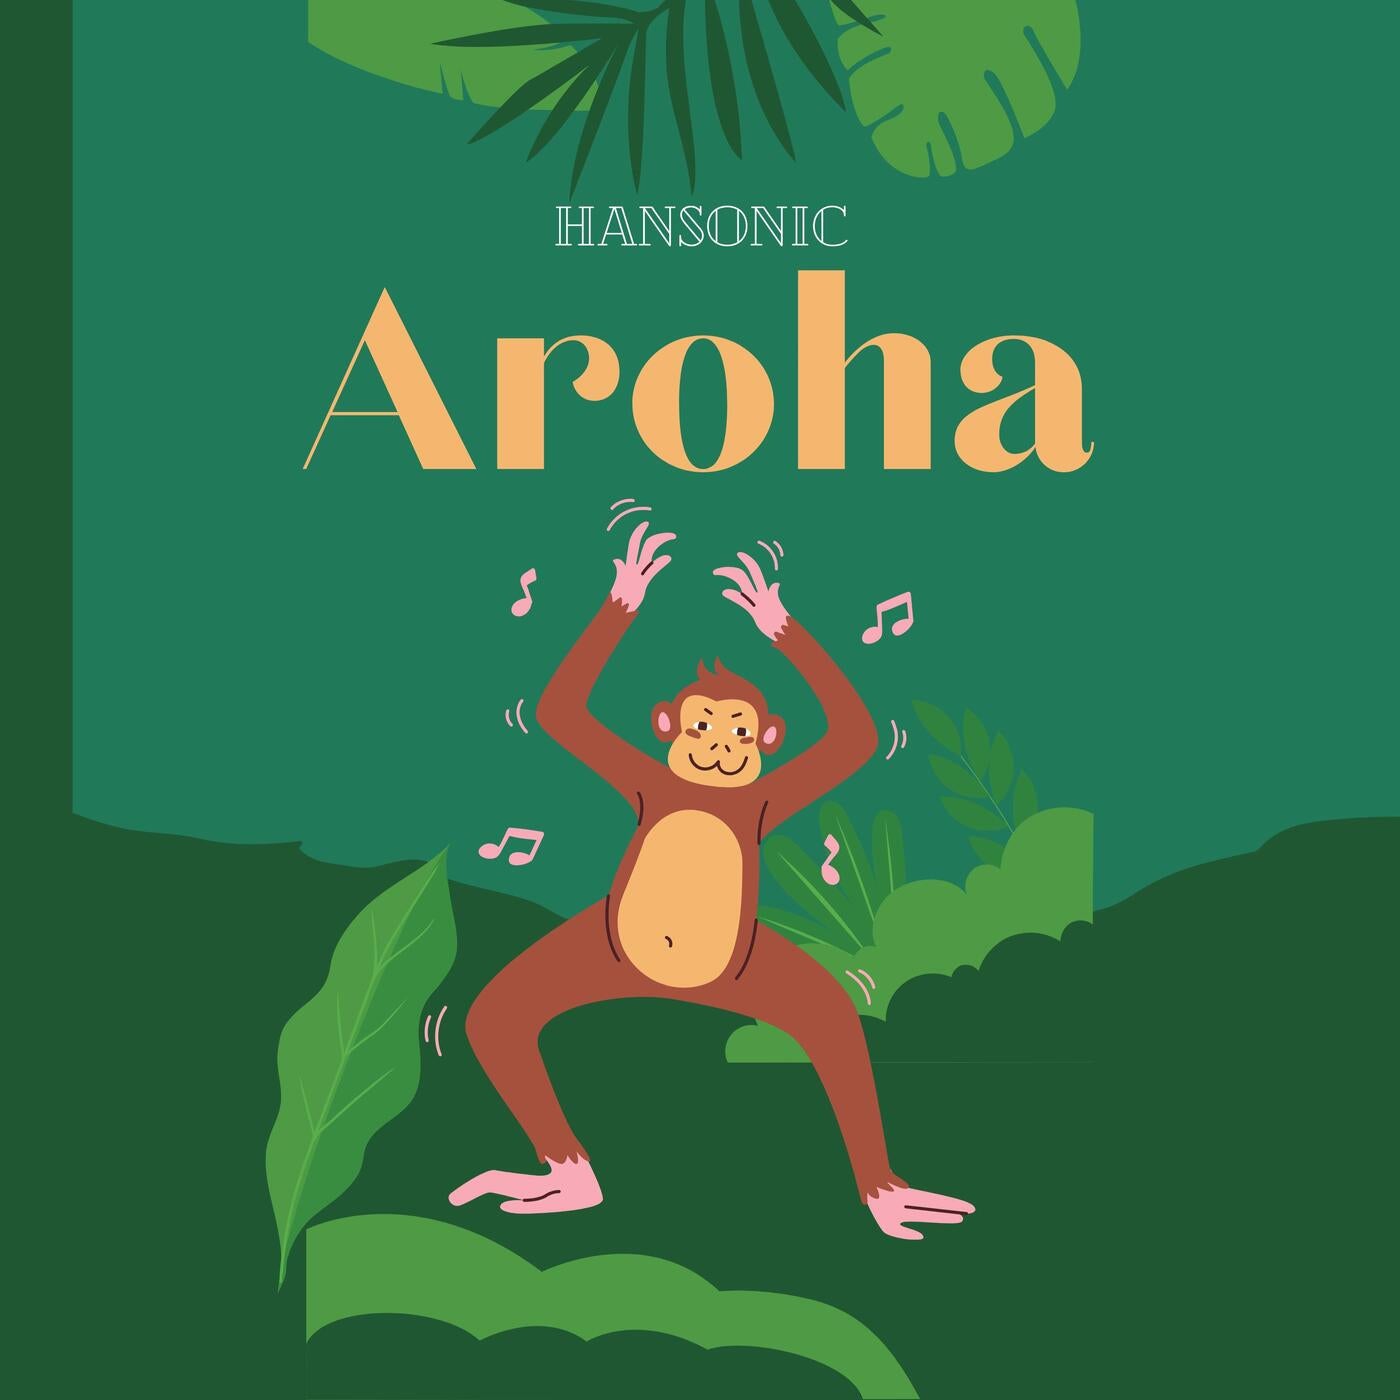 Aroha